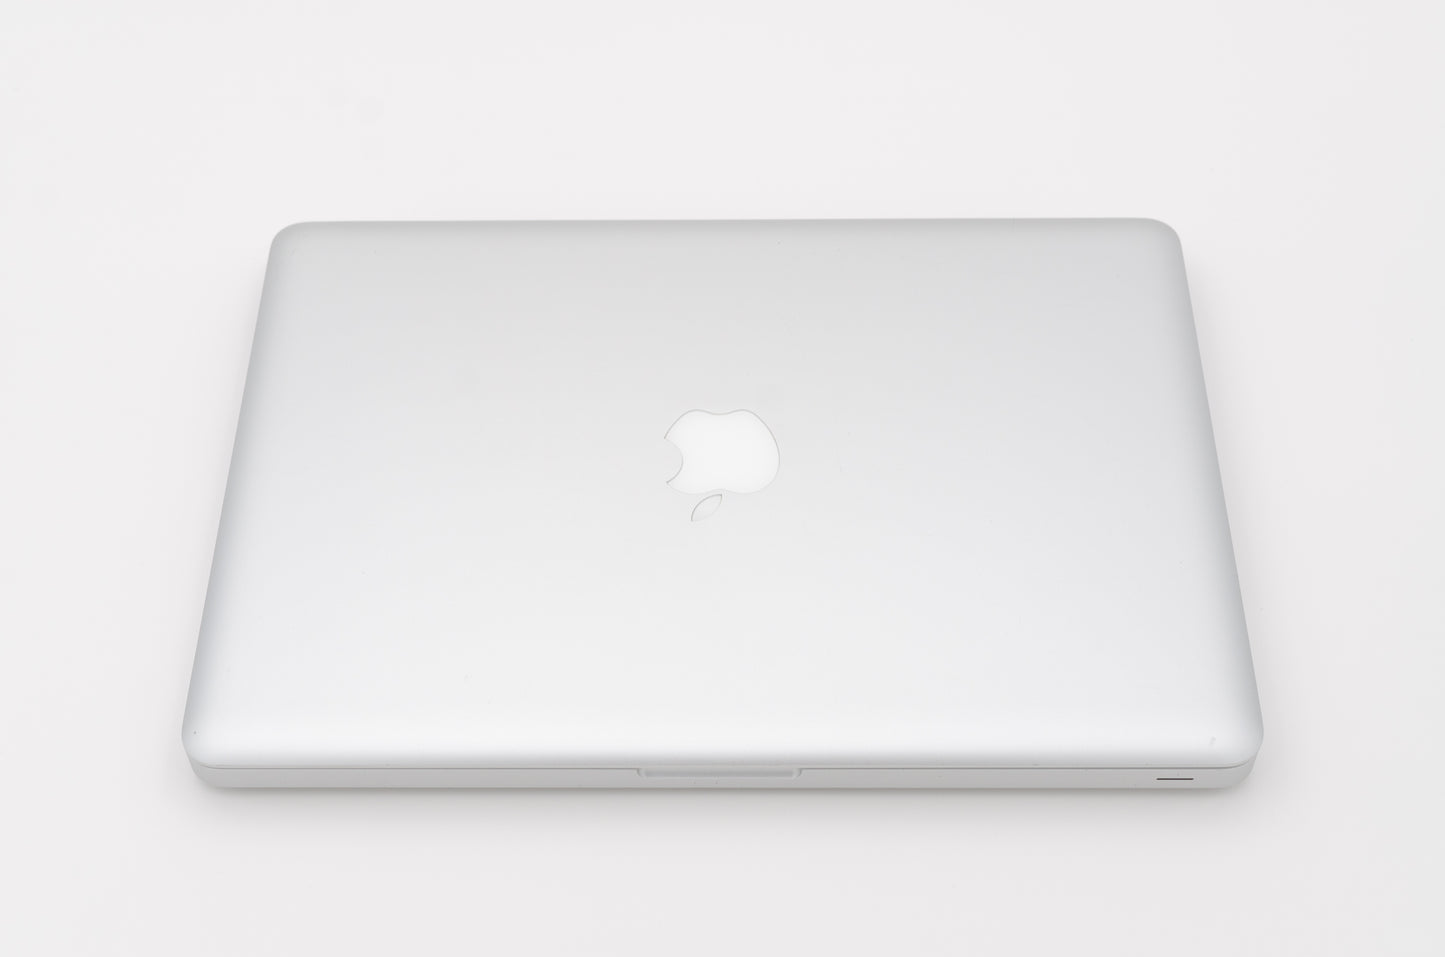 apple-mid-2009-13.3-inch-macbook-pro-a1278-aluminum-c2d - 2.53ghz processor, 4gb ram, 940m - 256mb gpu-mb991ll/a-3